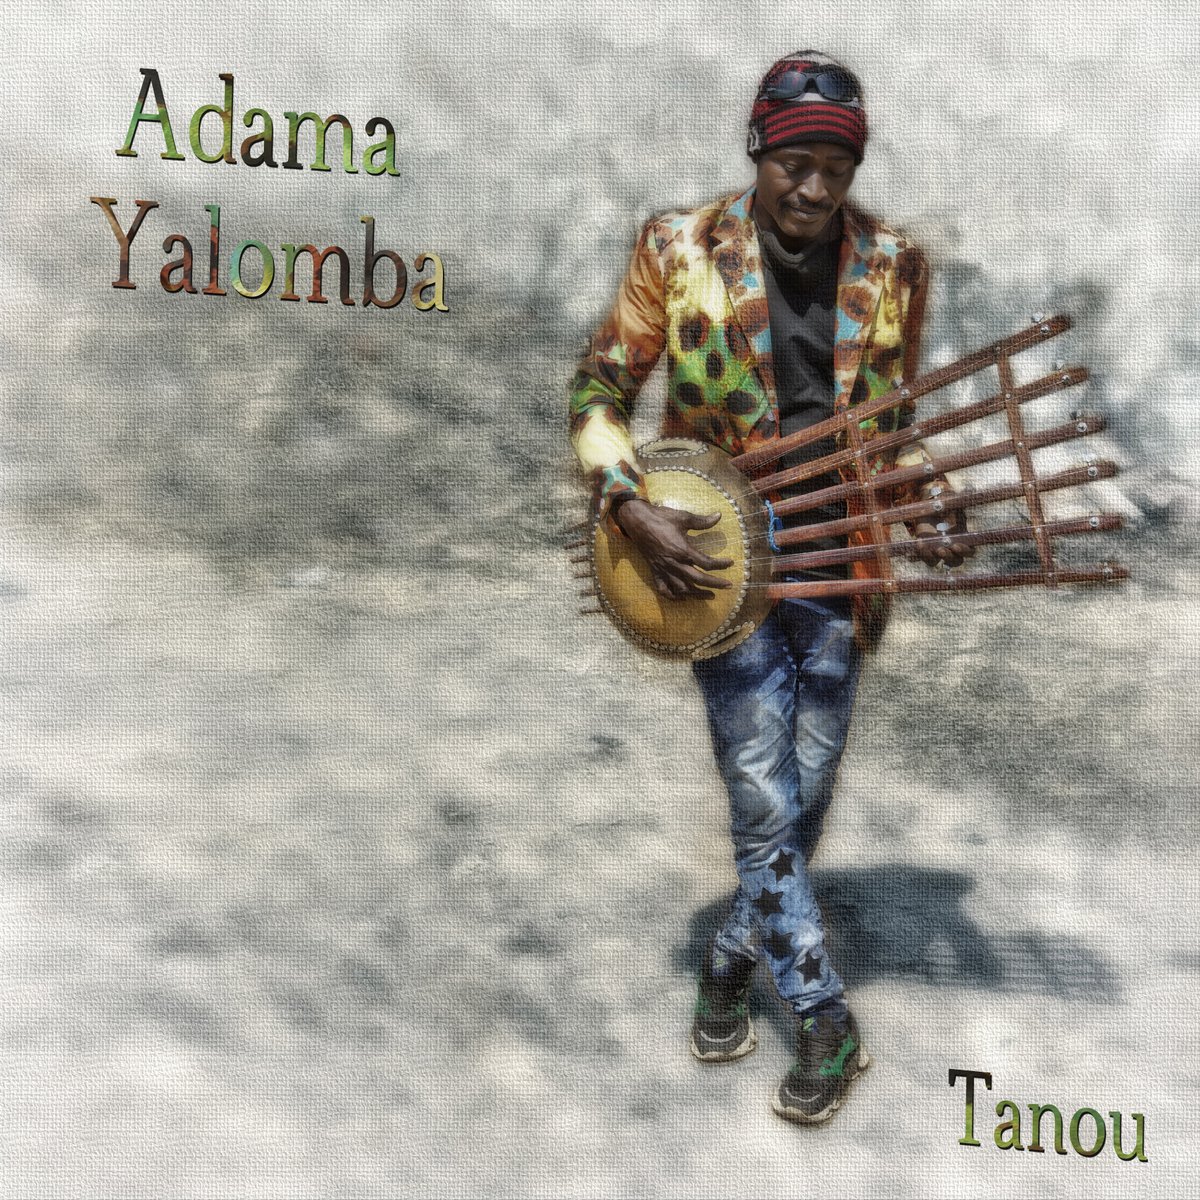 🎶 Découvrez le n'dan, racine malienne et ancêtre du banjo! Revitalisé par @USEmbassyMali  et I4A @maliculture 
cet instrument brille dans le nouvel album de Adama Yalomba, 'Tanou'. Plus d'infos ➡️ tinyurl.com/33dufnru #USAMaliToujoursEnsemble 🇺🇸🇲🇱